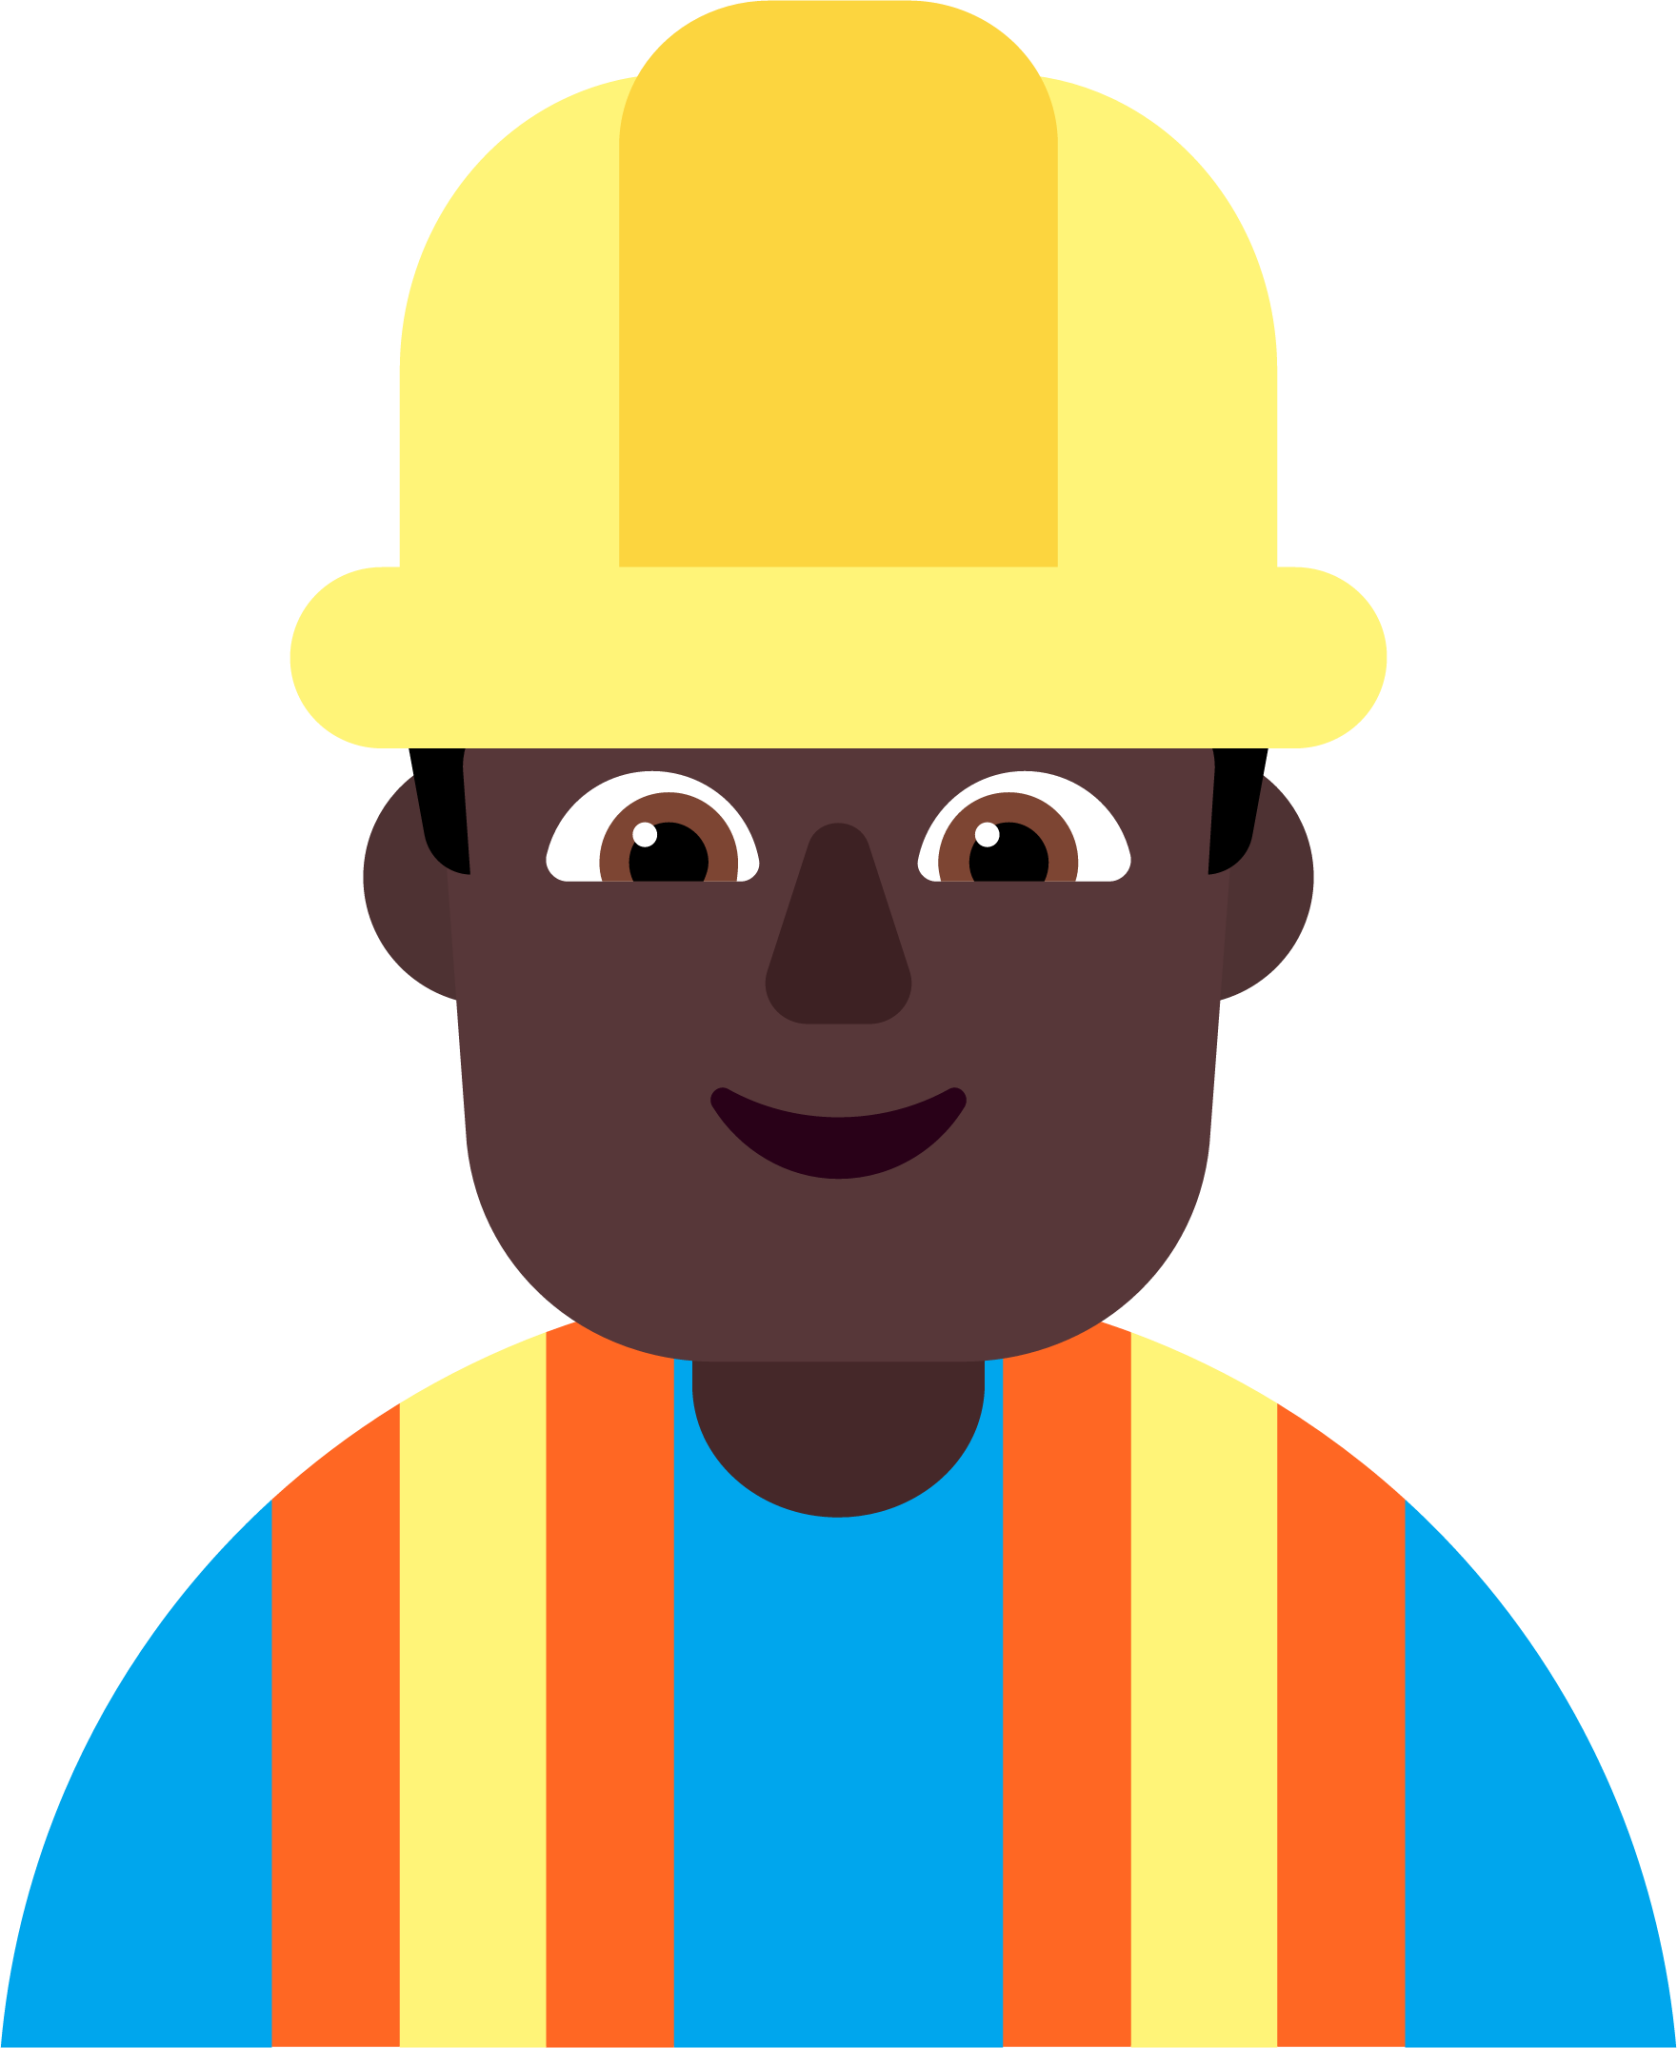 man construction worker dark emoji